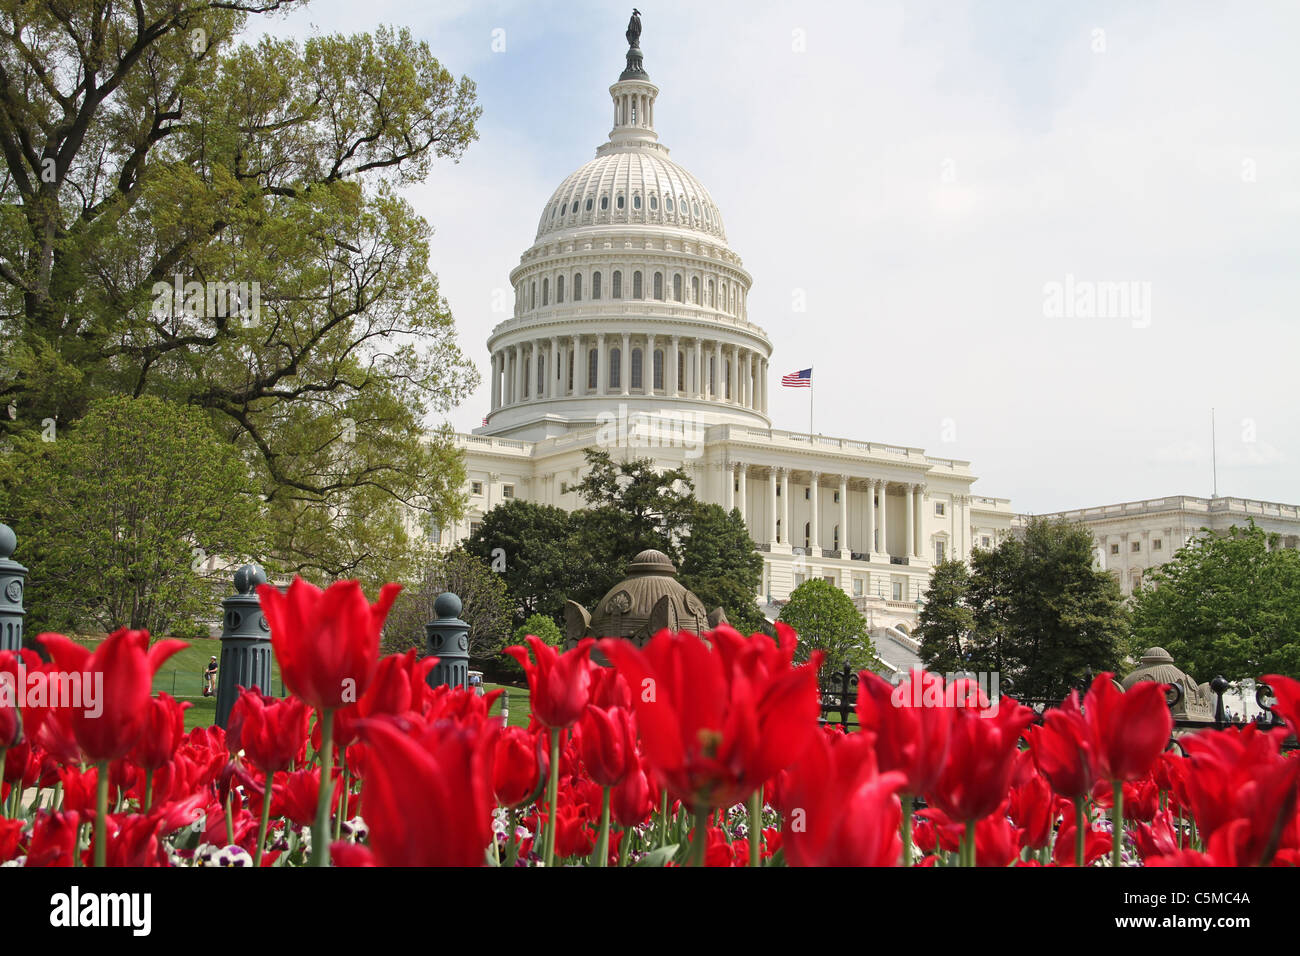 United States Capitol building et tulipes Printemps Washington DC USA Banque D'Images